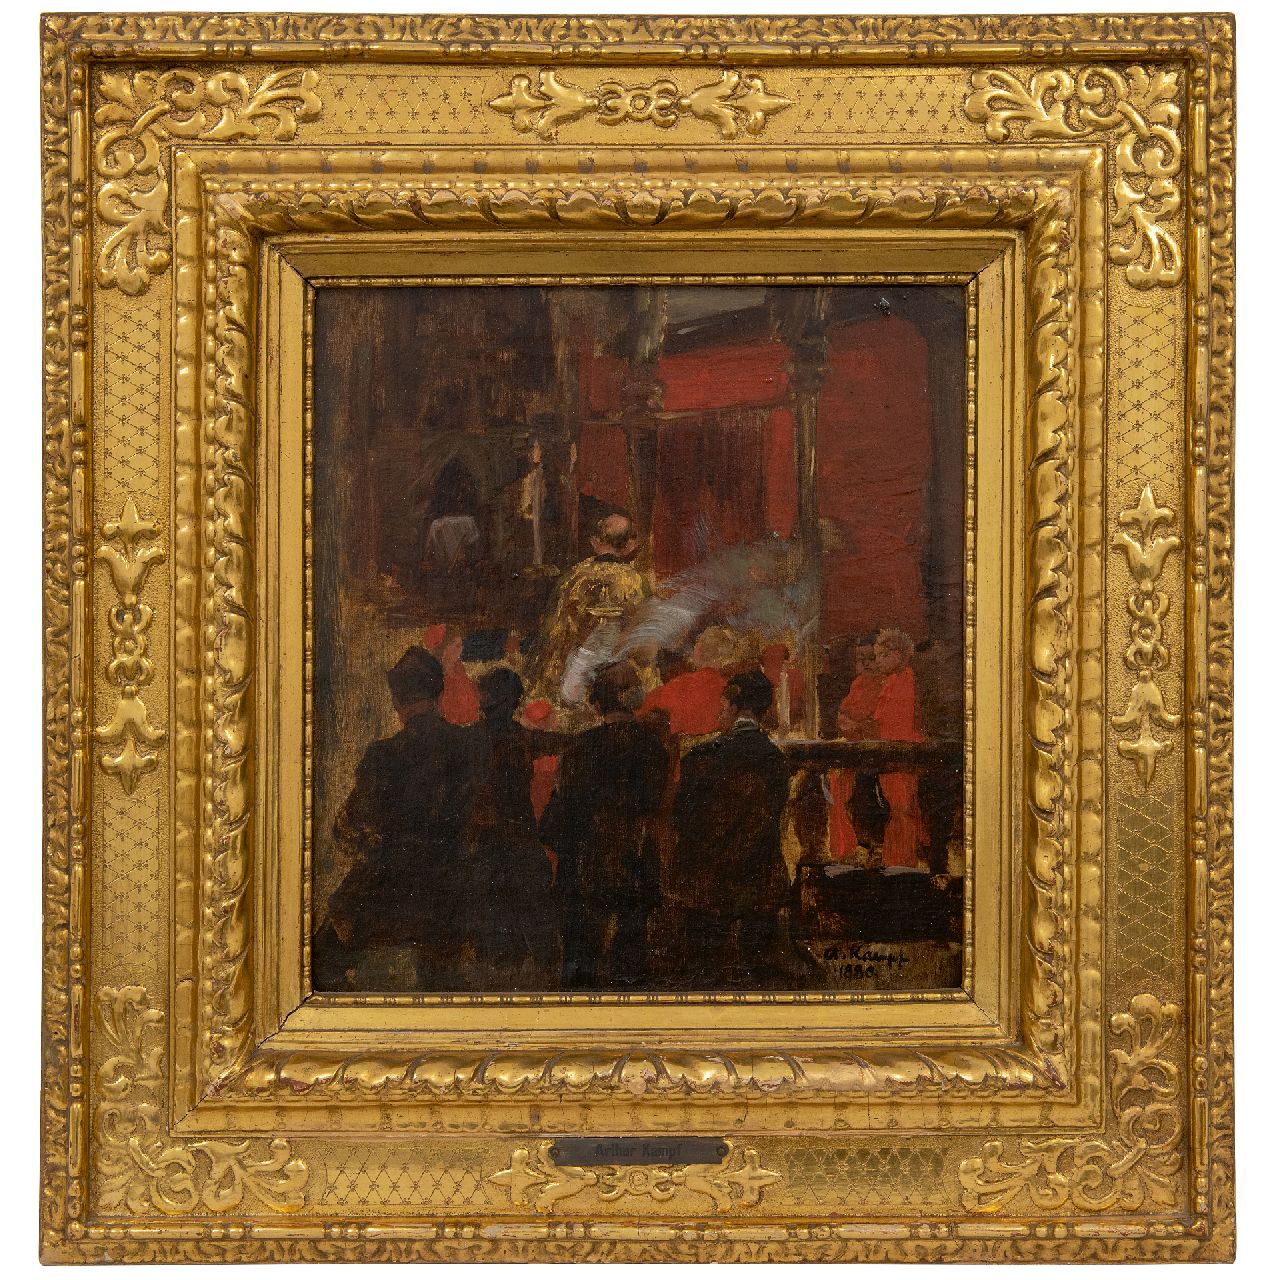 Kampf E.P.A.  | Egbert Paul 'Arthur' Kampf | Schilderijen te koop aangeboden | Bij het koor, olieverf op doek 31,9 x 30,2 cm, gesigneerd rechtsonder en gedateerd 1880